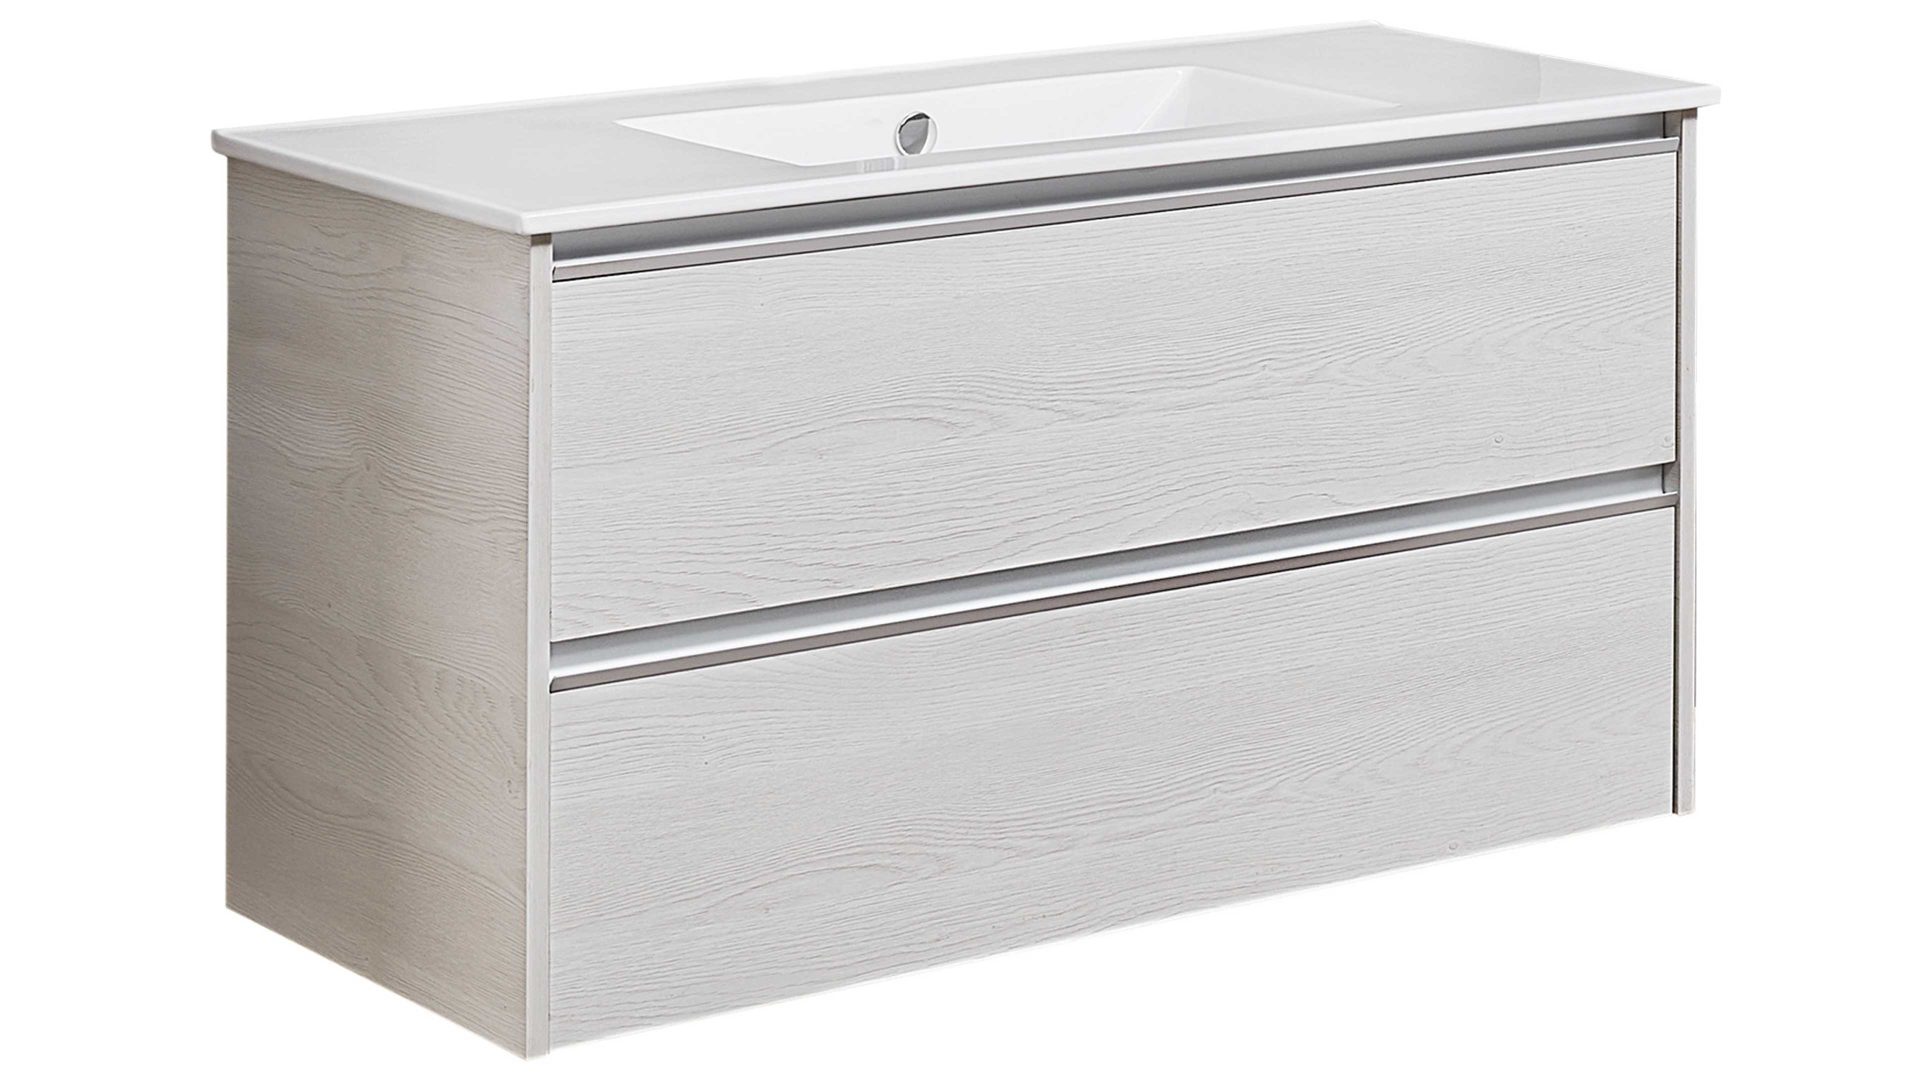 Waschbeckenunterschrank Pelipal aus Holz in Weiß pelipal Serie 6040 - Waschtischunterschrank weiße Eiche – zwei Auszüge, Breite ca. 98 cm